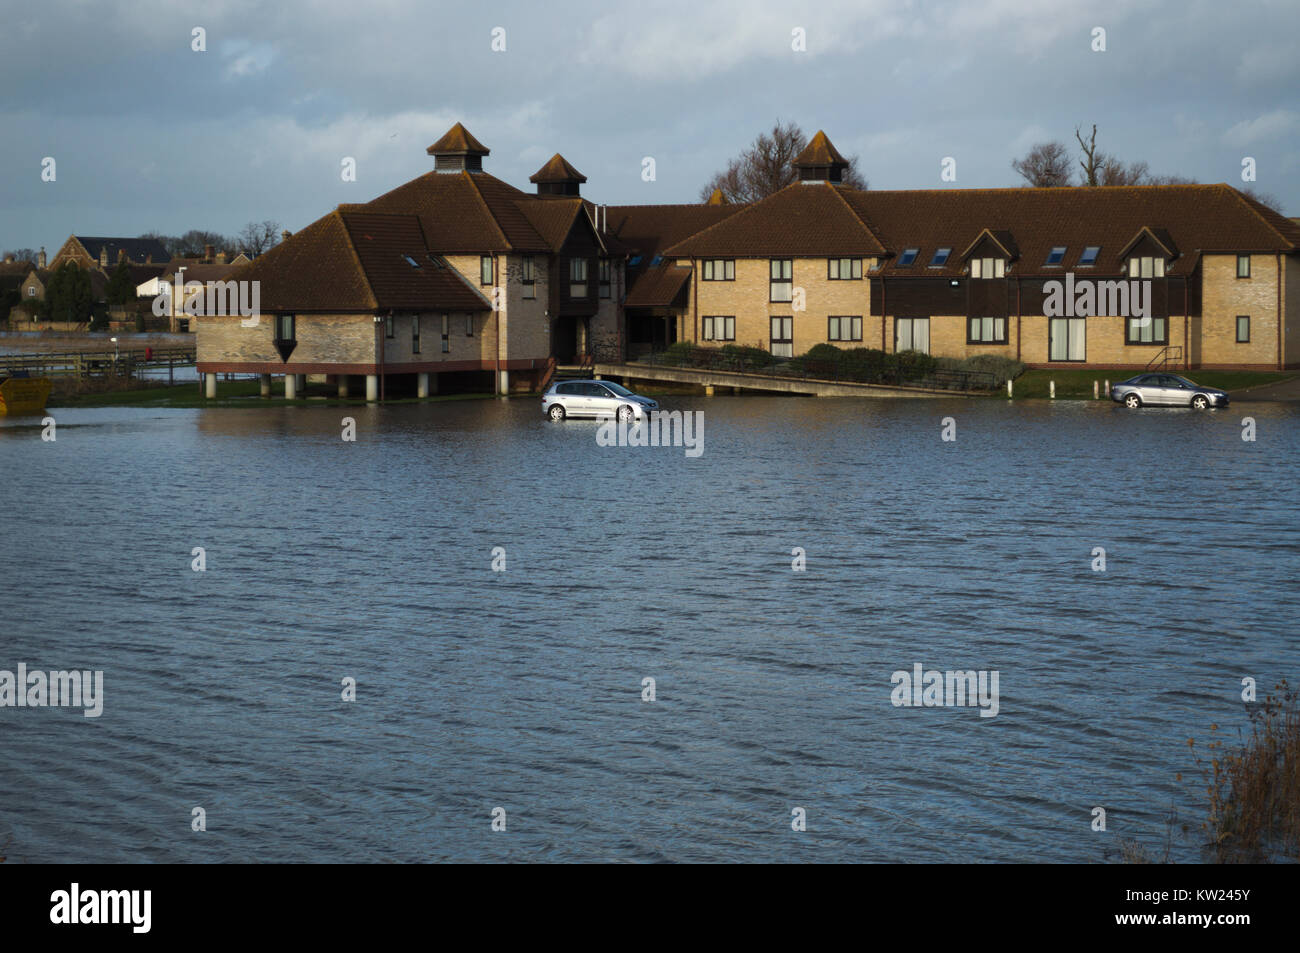 30 dicembre 2017 St Ives Cambridge Regno Unito a filamento auto nel parcheggio dell'hotel. come fiume Ouse inondazioni Foto Stock